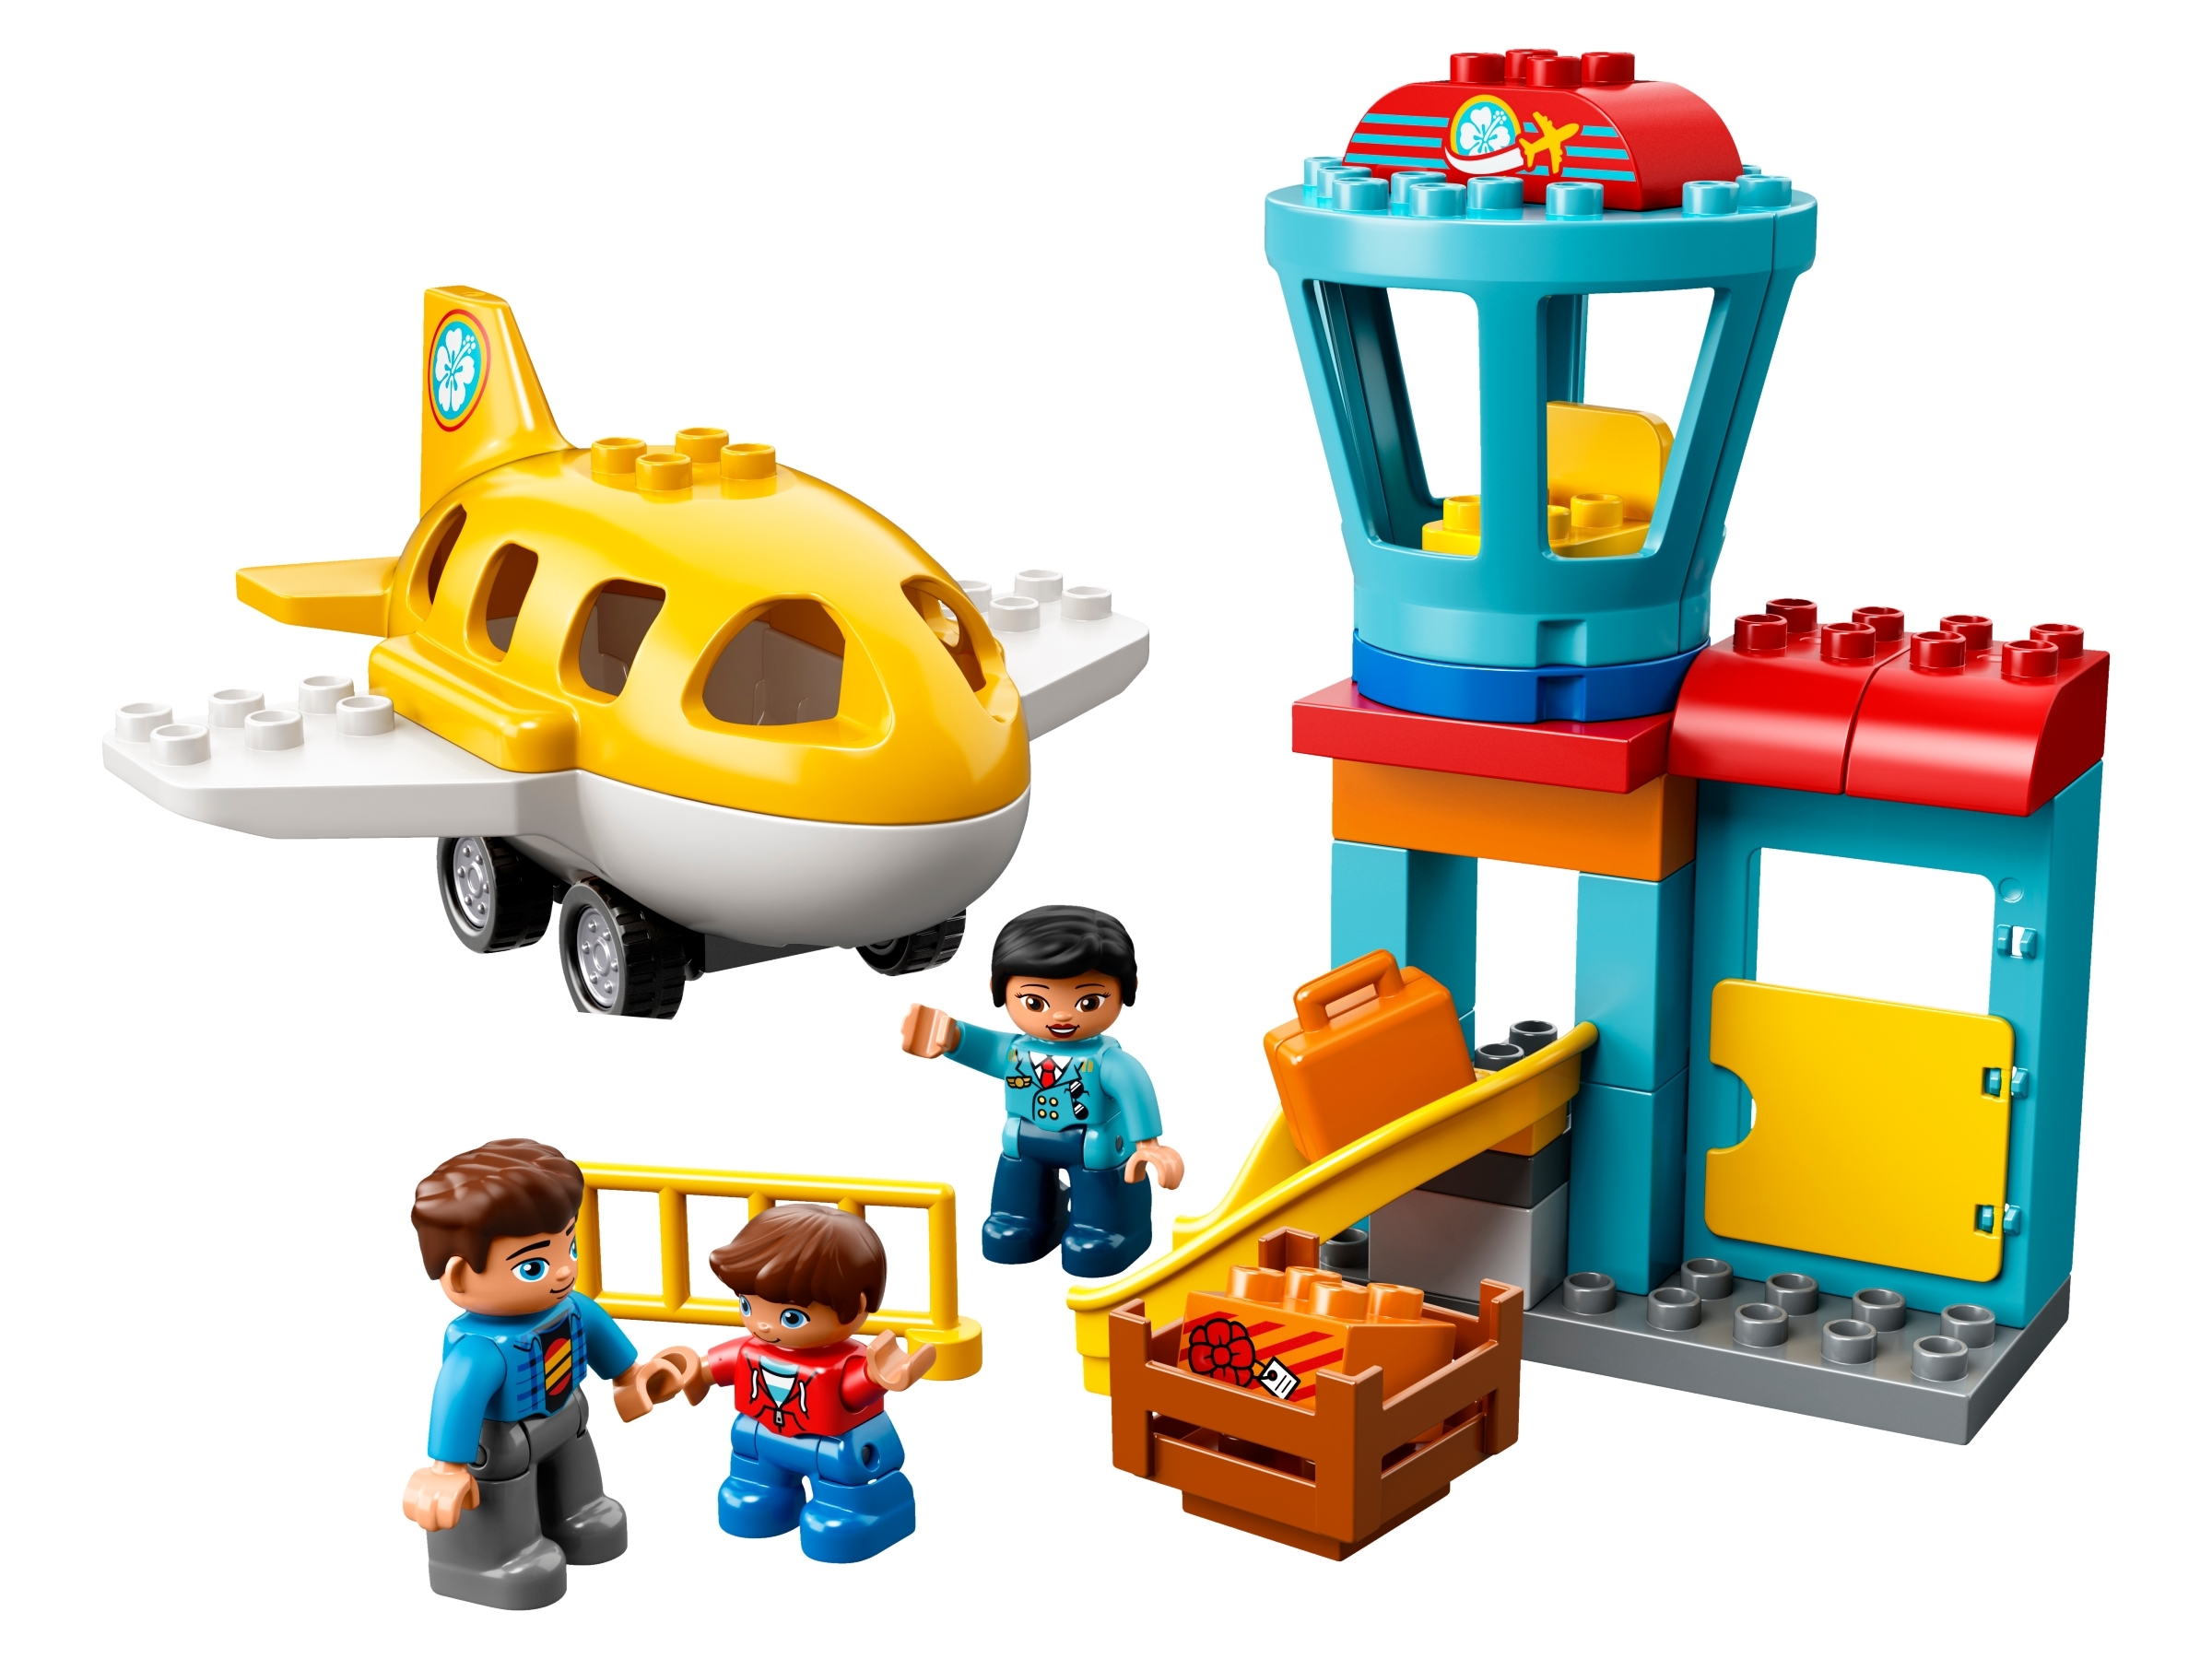 Derfor Glat sæt ind Airport 10871 | DUPLO® | Buy online at the Official LEGO® Shop US